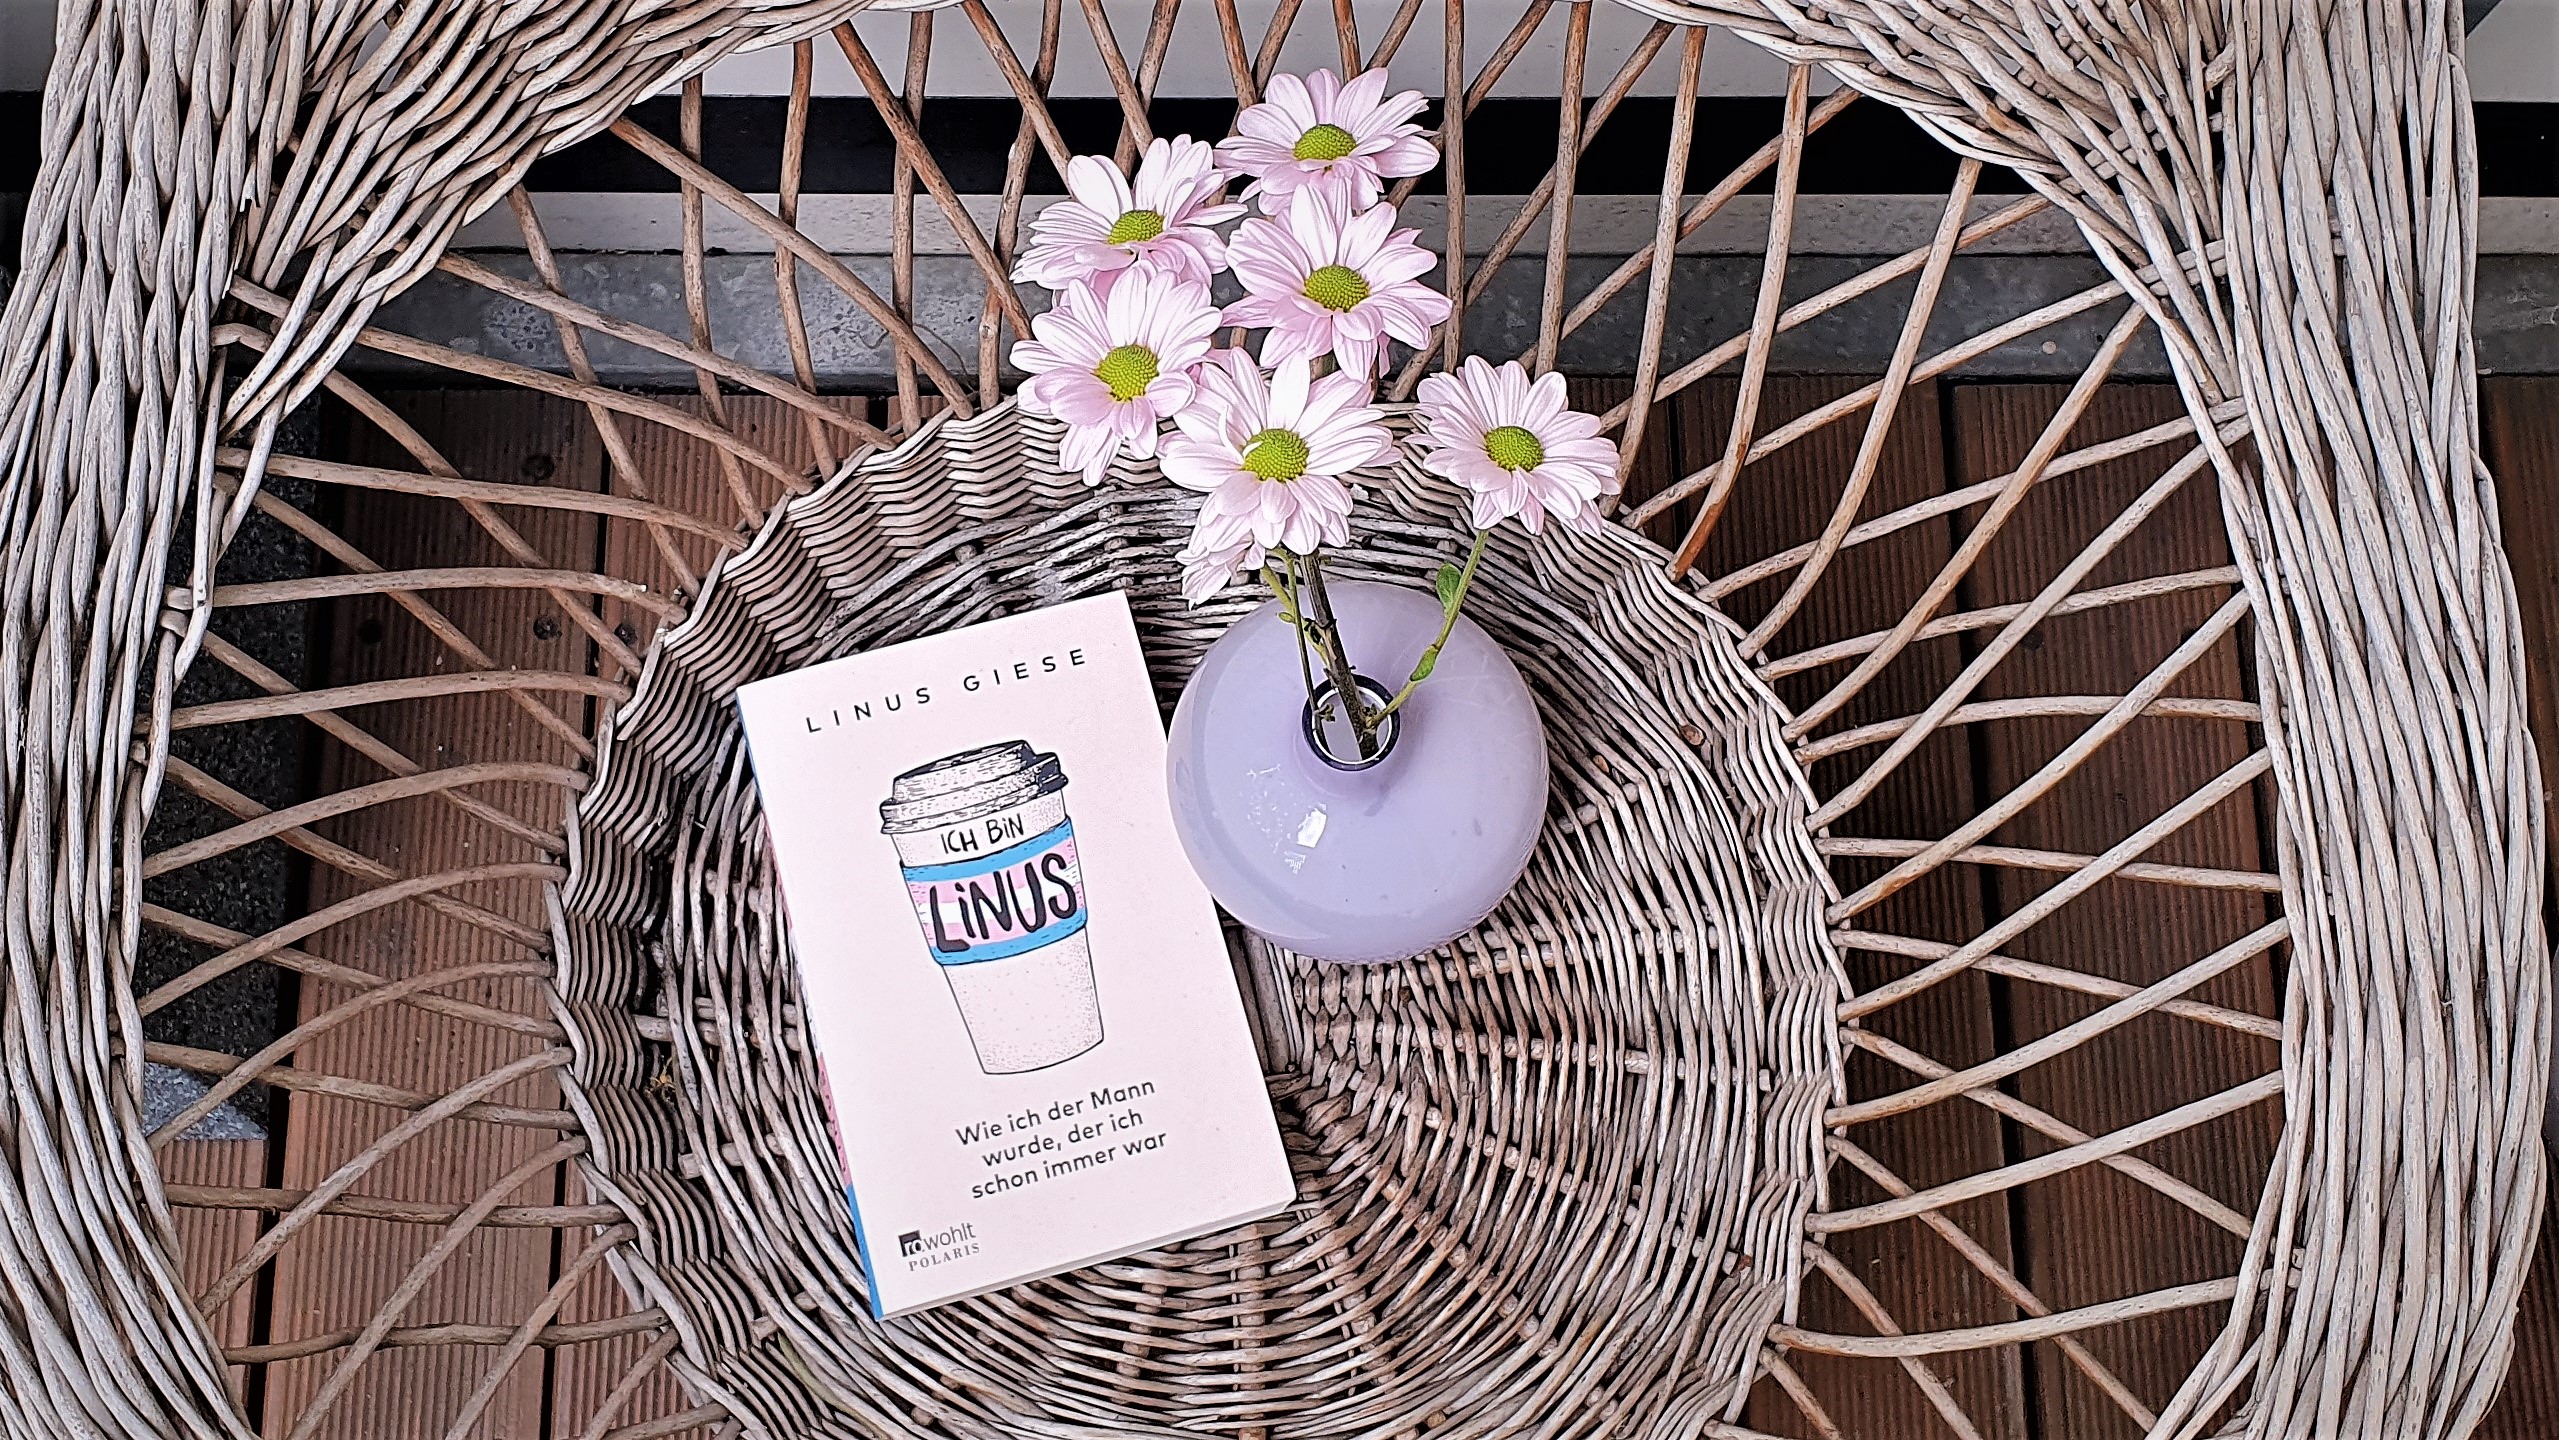 Zu sehen ist das Buch "Ich bin Linus" auf einem Korbstuhl. Rechts vom Buch befindet sich eine lila Blumenvase mit rosa Blumen.